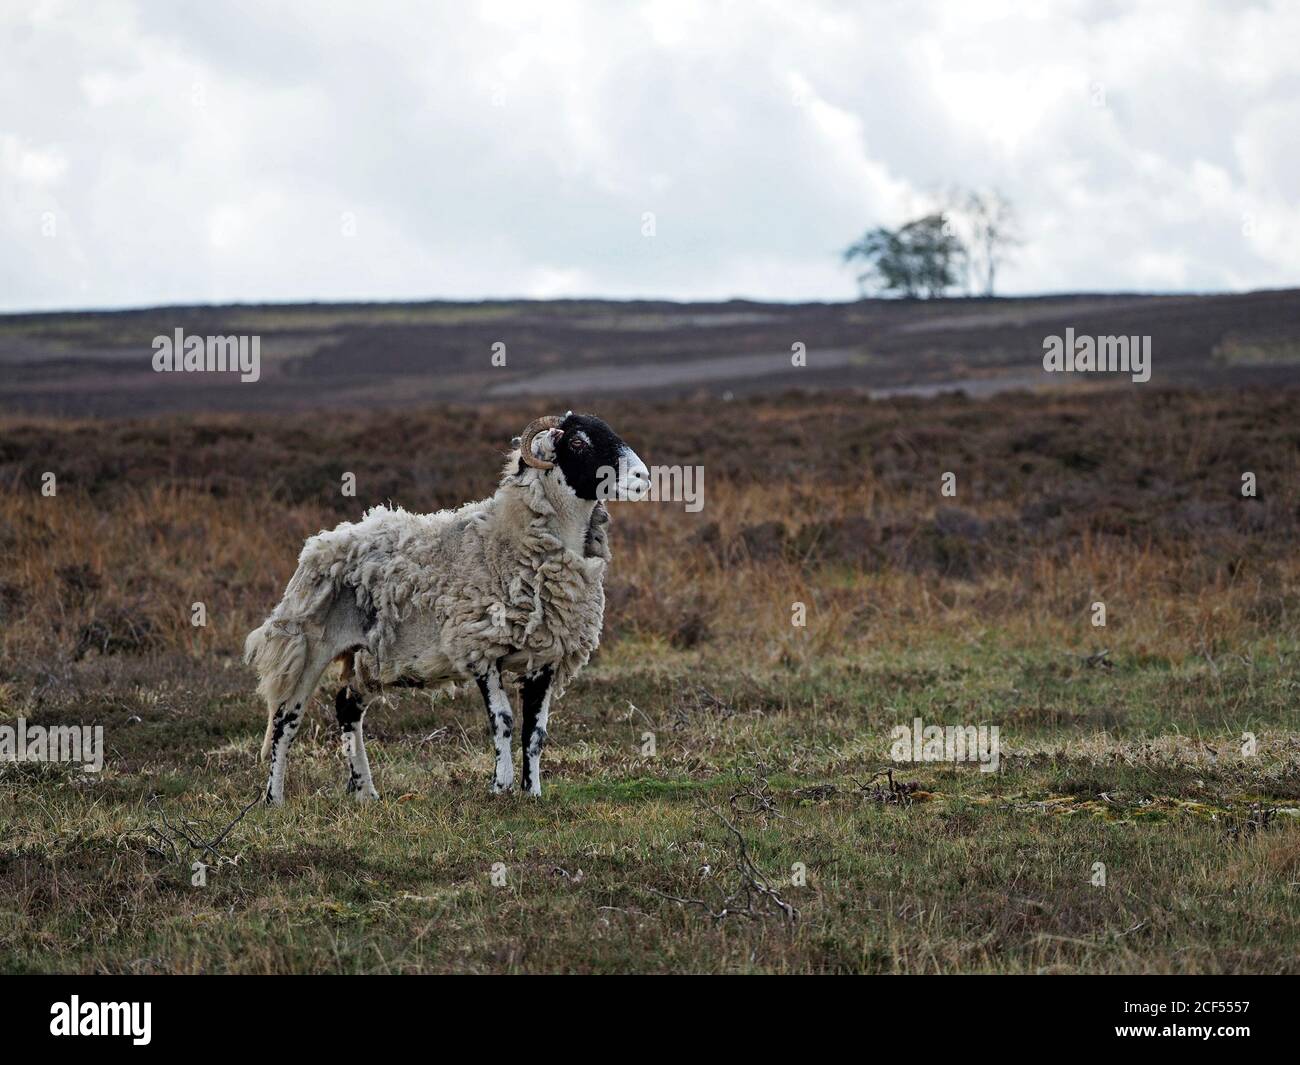 Un mouton à face noire adulte robuste sur une lande de bruyères botte sombre et robuste en polaire naturellement pendant que le printemps se tourne vers l'été à Cumbria, Angleterre, Royaume-Uni Banque D'Images